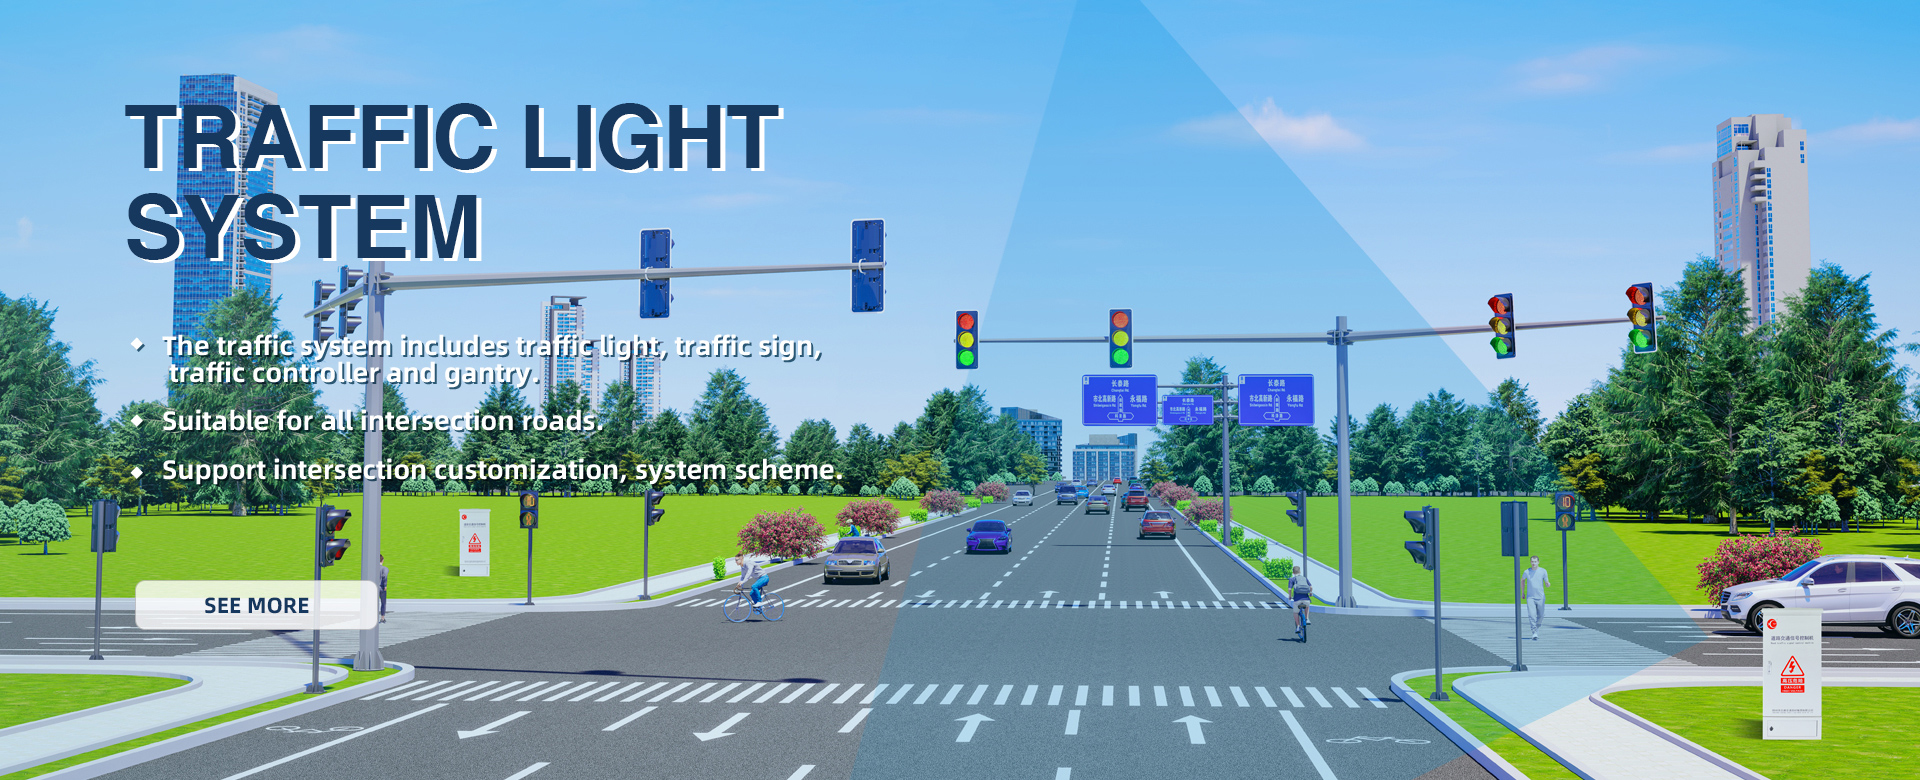 Traffic Light System